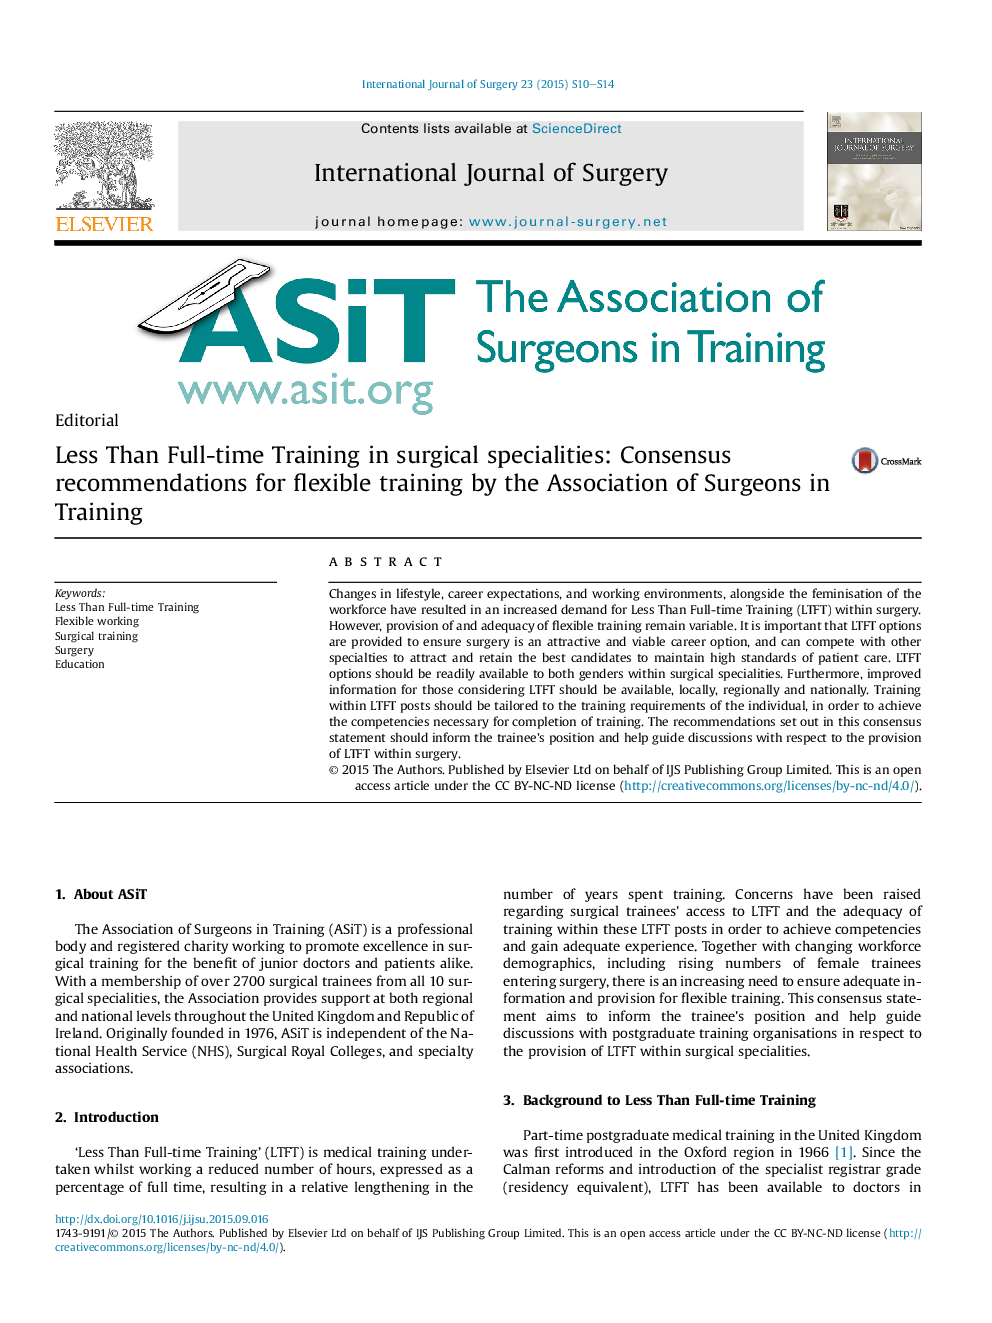 کمتر از دوره های آموزشی تمام وقت در تخصص های جراحی: توصیه های هماهنگی برای آموزش انعطاف پذیر توسط انجمن جراحان در آموزش 